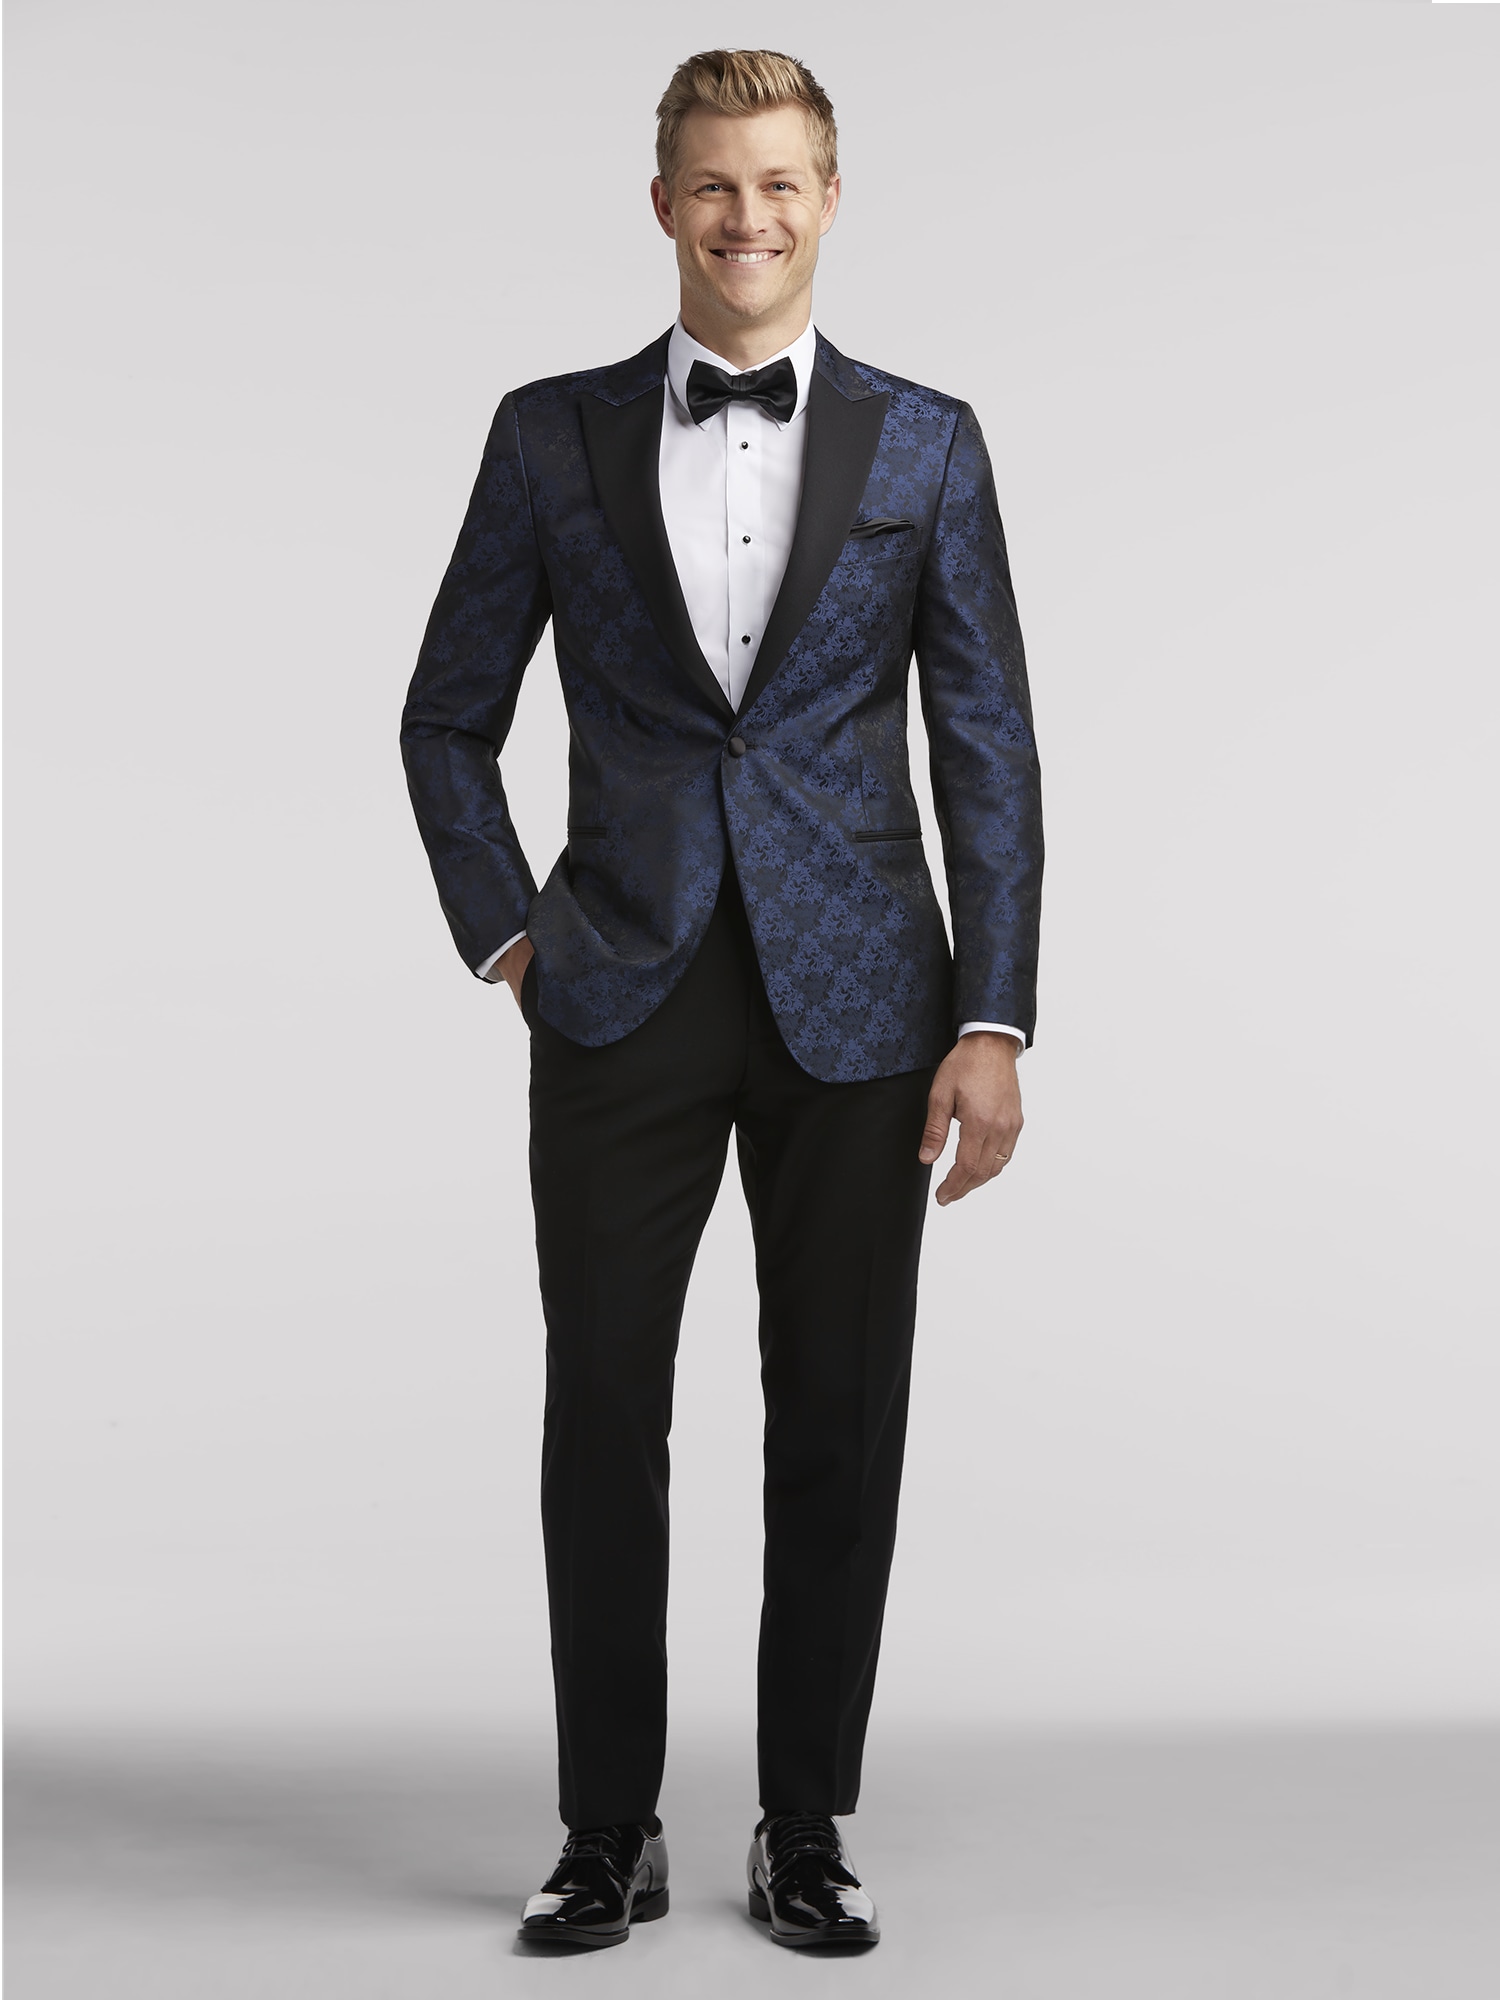 Blue Wedding Suit Rental, Generation Tux